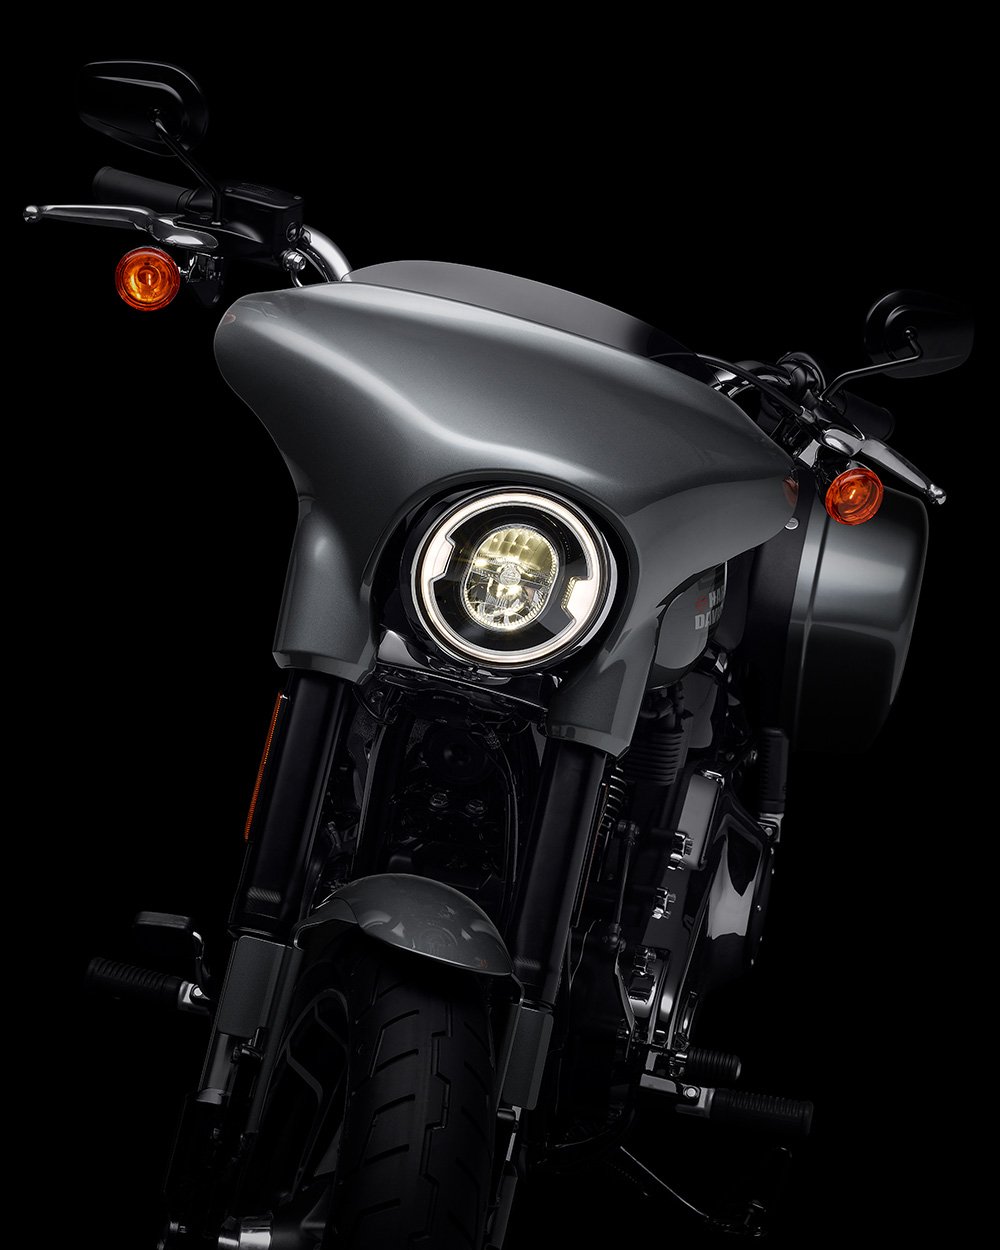 2022-es Harley-Davidson Sport Glide motorkerékpár